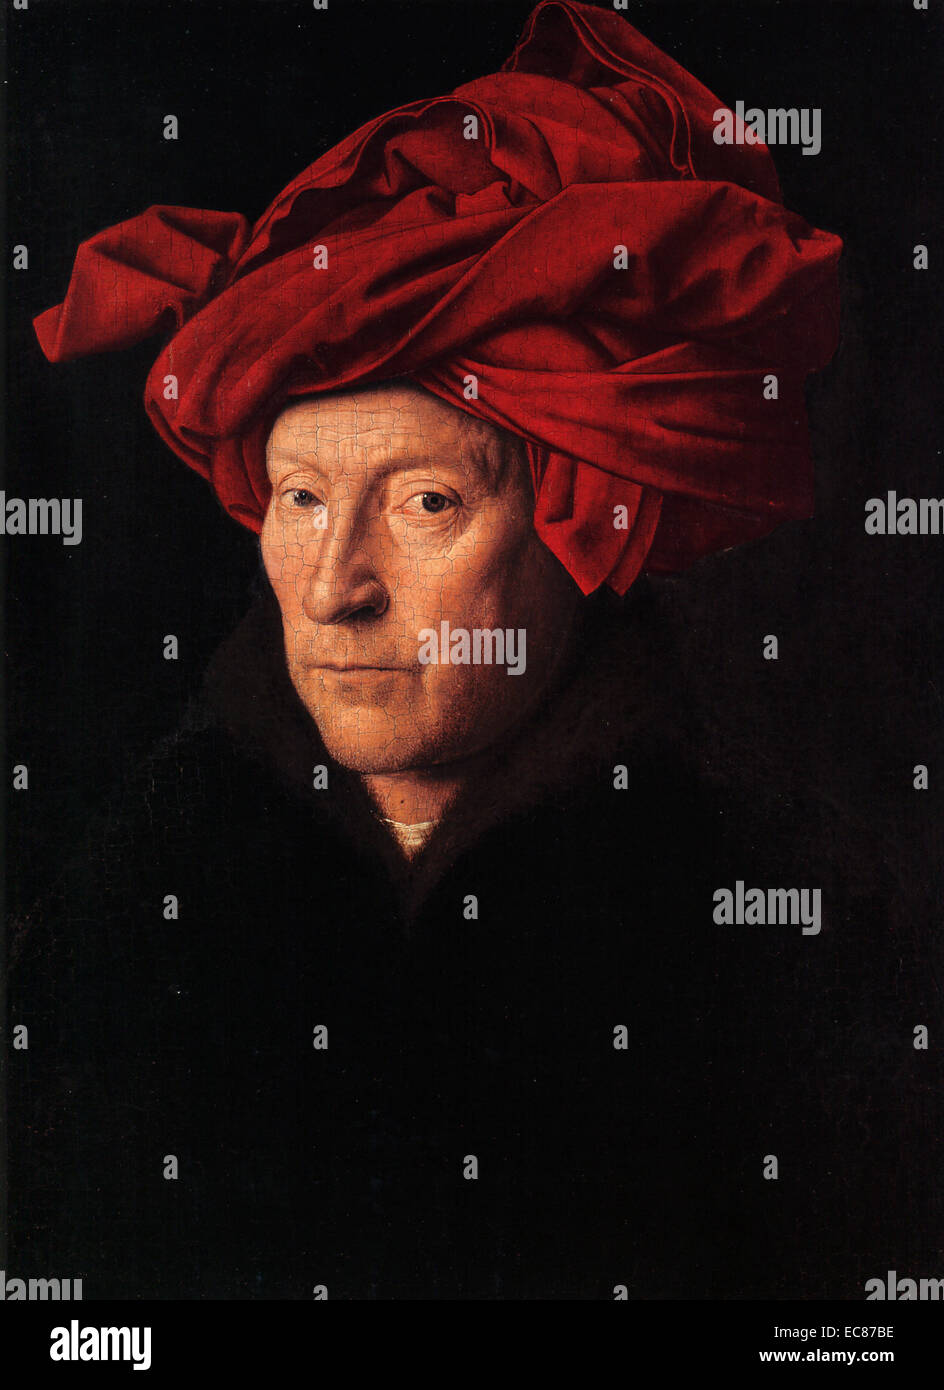 Porträt eines Mannes, bekannt als Porträt eines Mannes in einem Turban, Gemälde von den frühen niederländischen Meister Jan van Eyck. Vom 15. Jahrhundert Stockfoto